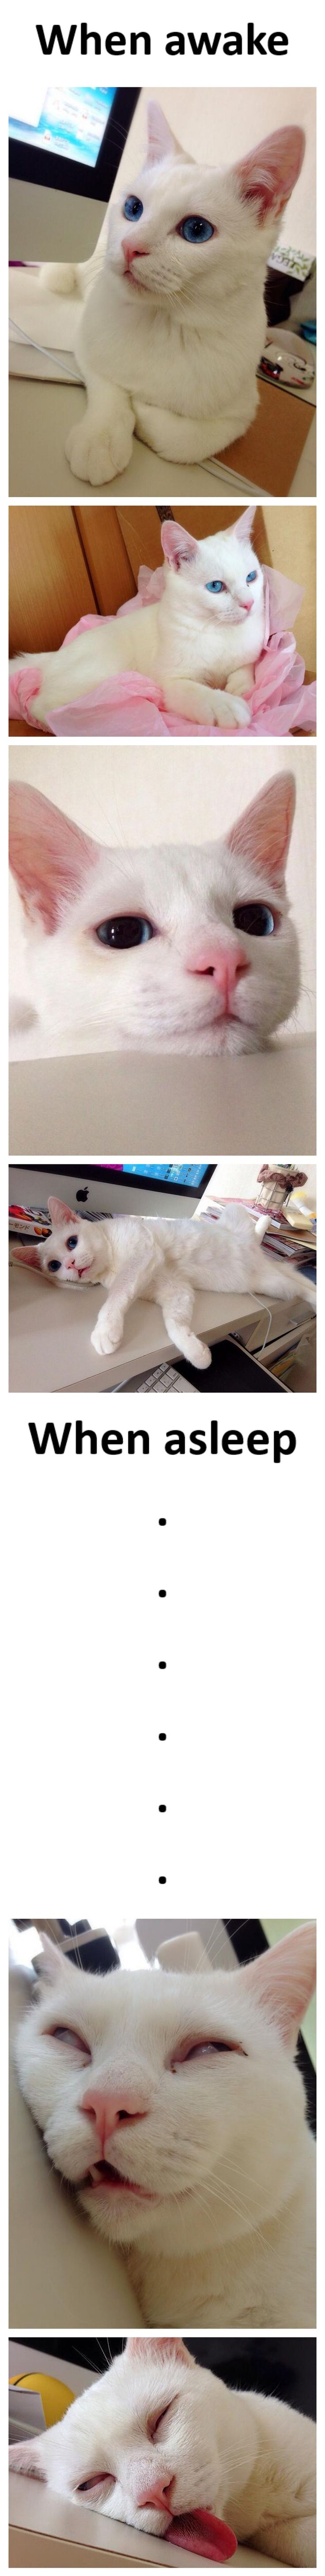 Cat - When awake When asleep